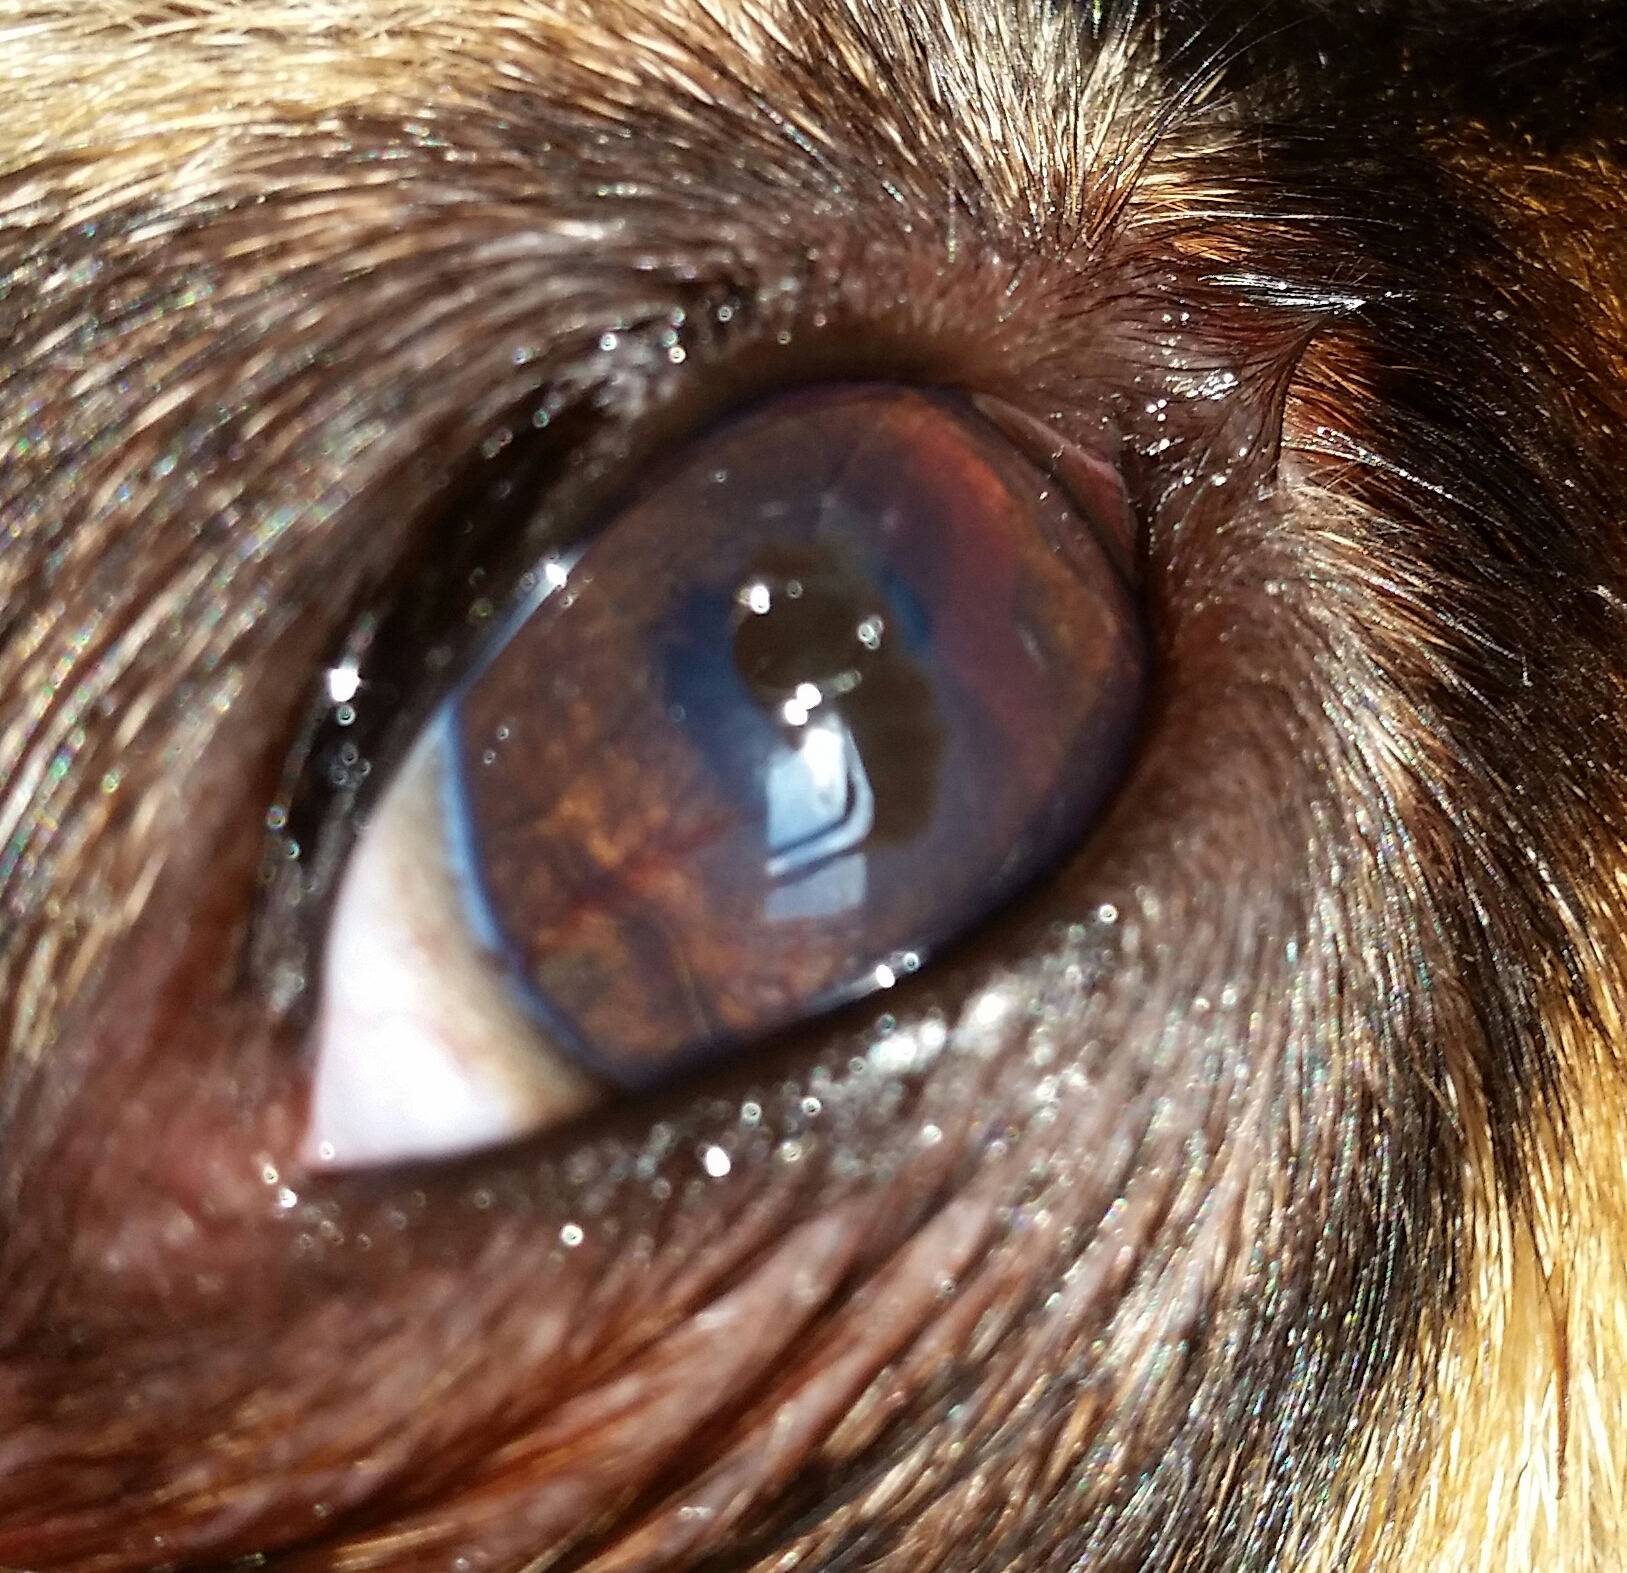 hund hat Fleck im Auge was ist das? (Augen, Flecken, braun)